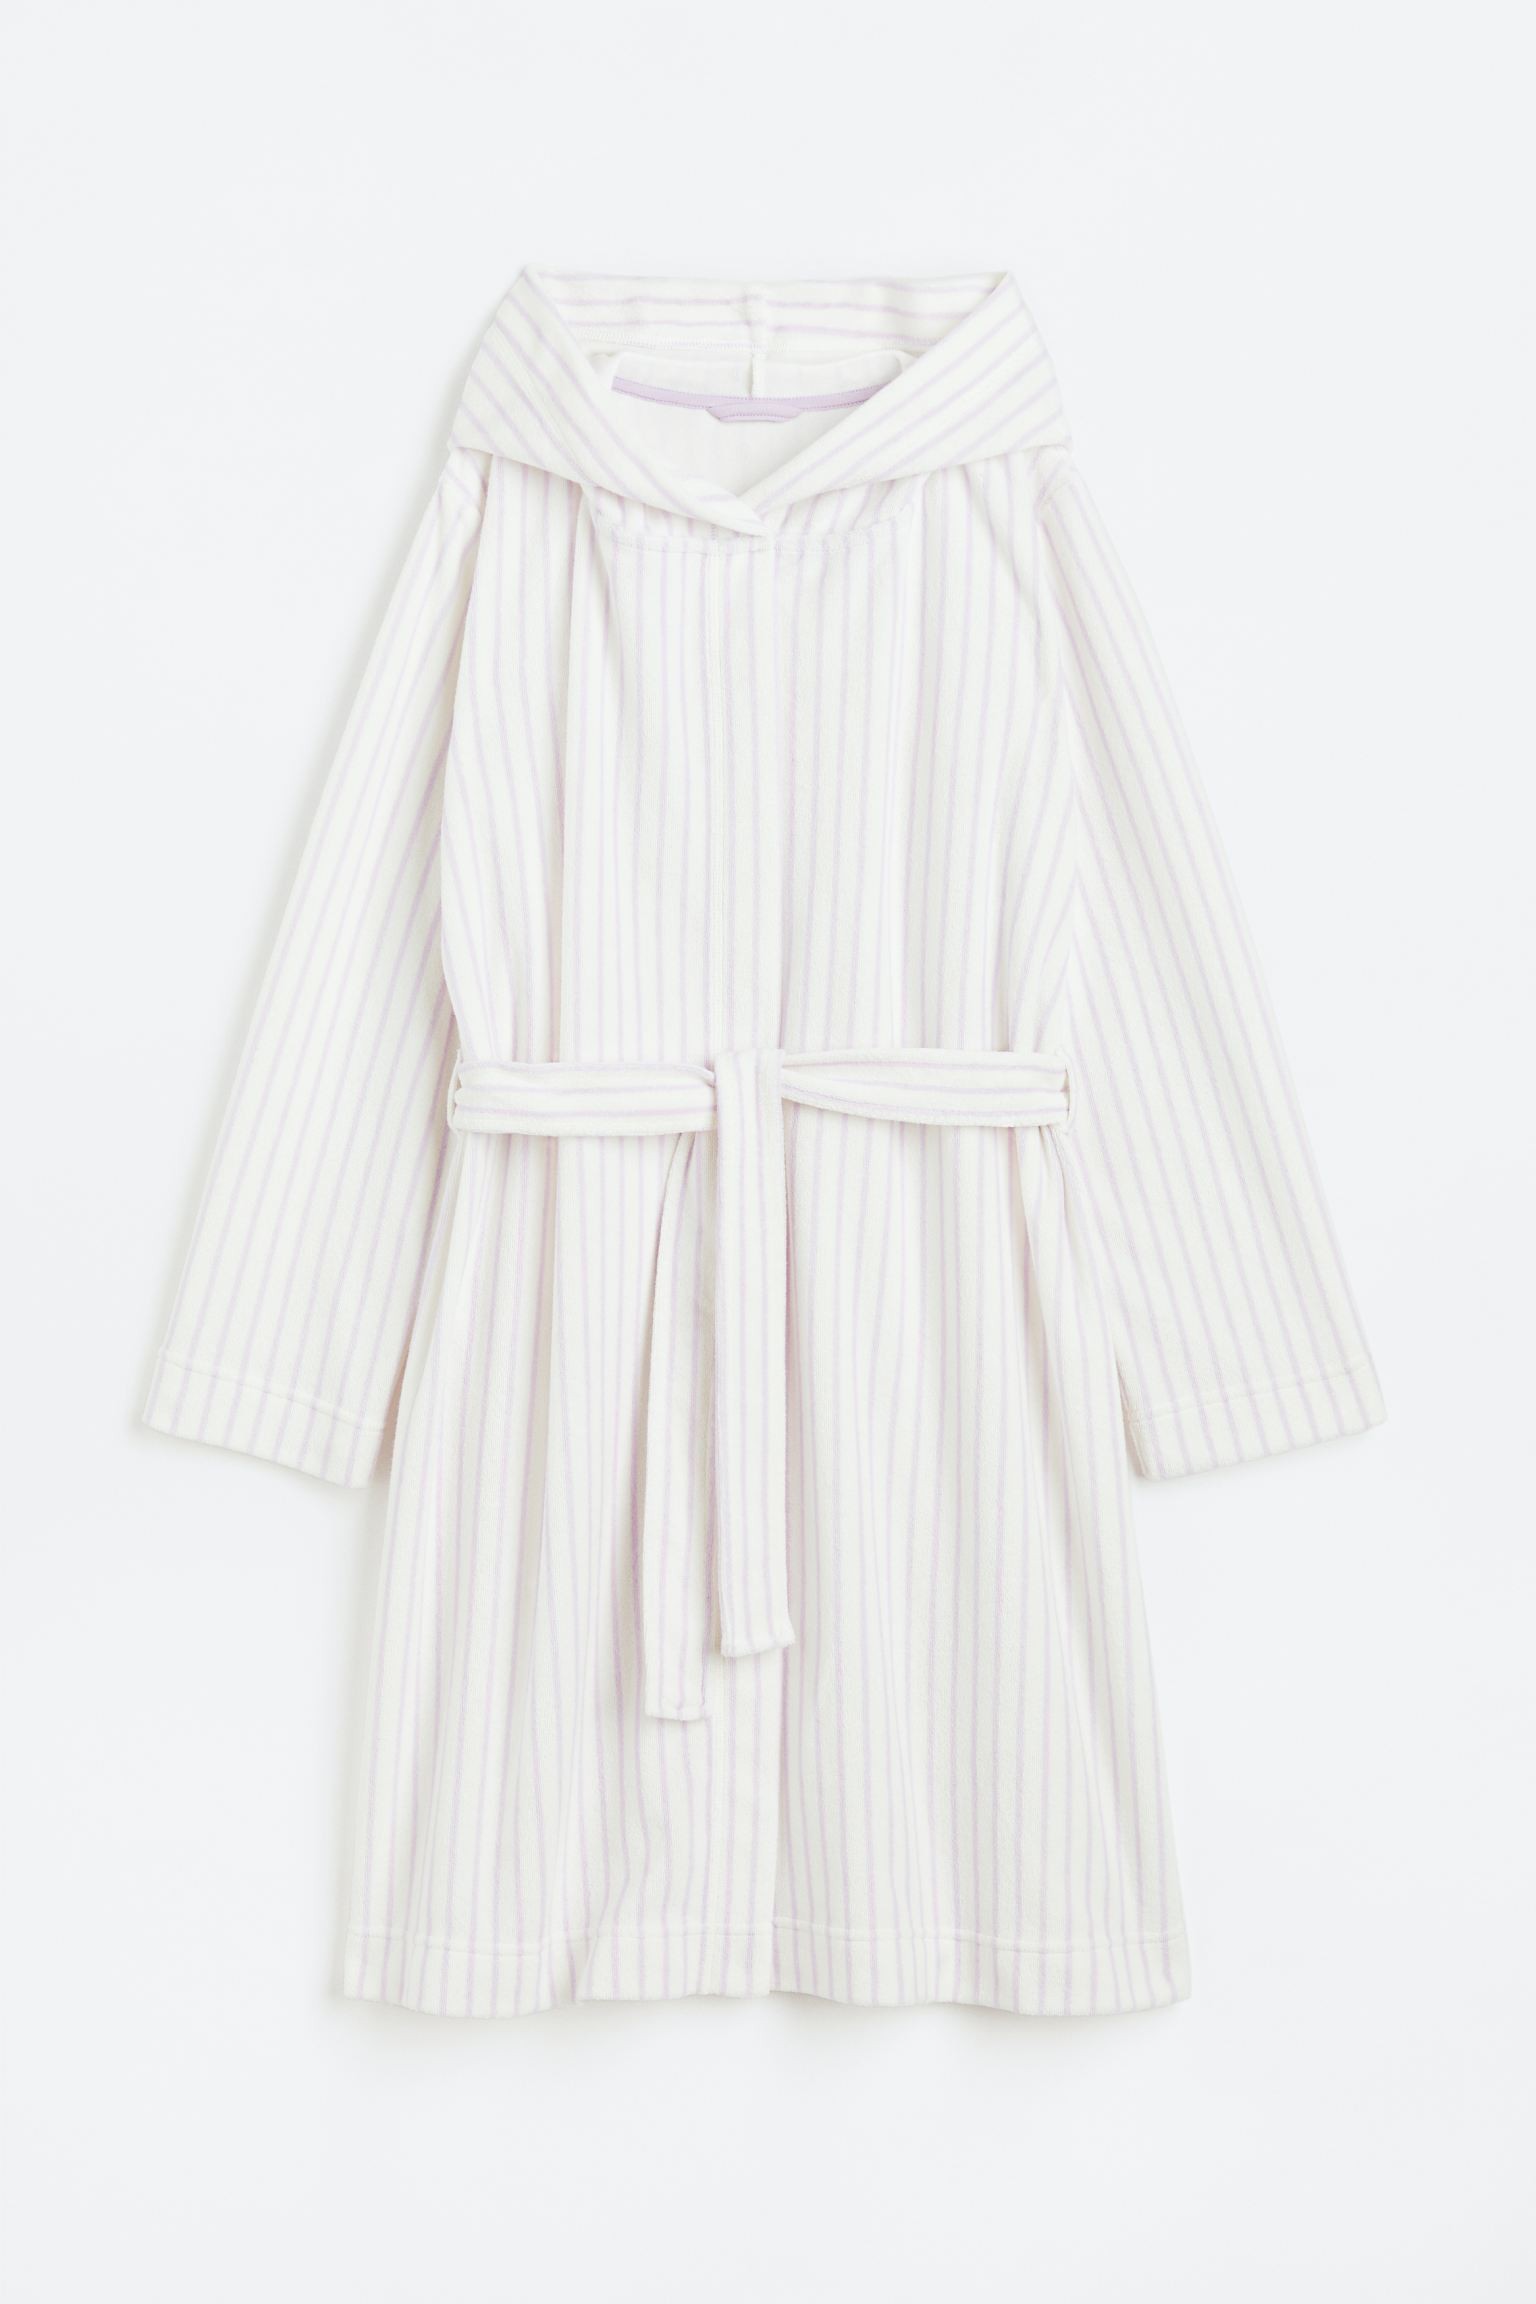 H&M Home Махровий халат, Білі/фіолетові смужки, Різні розміри 1132470001 | 1132470001